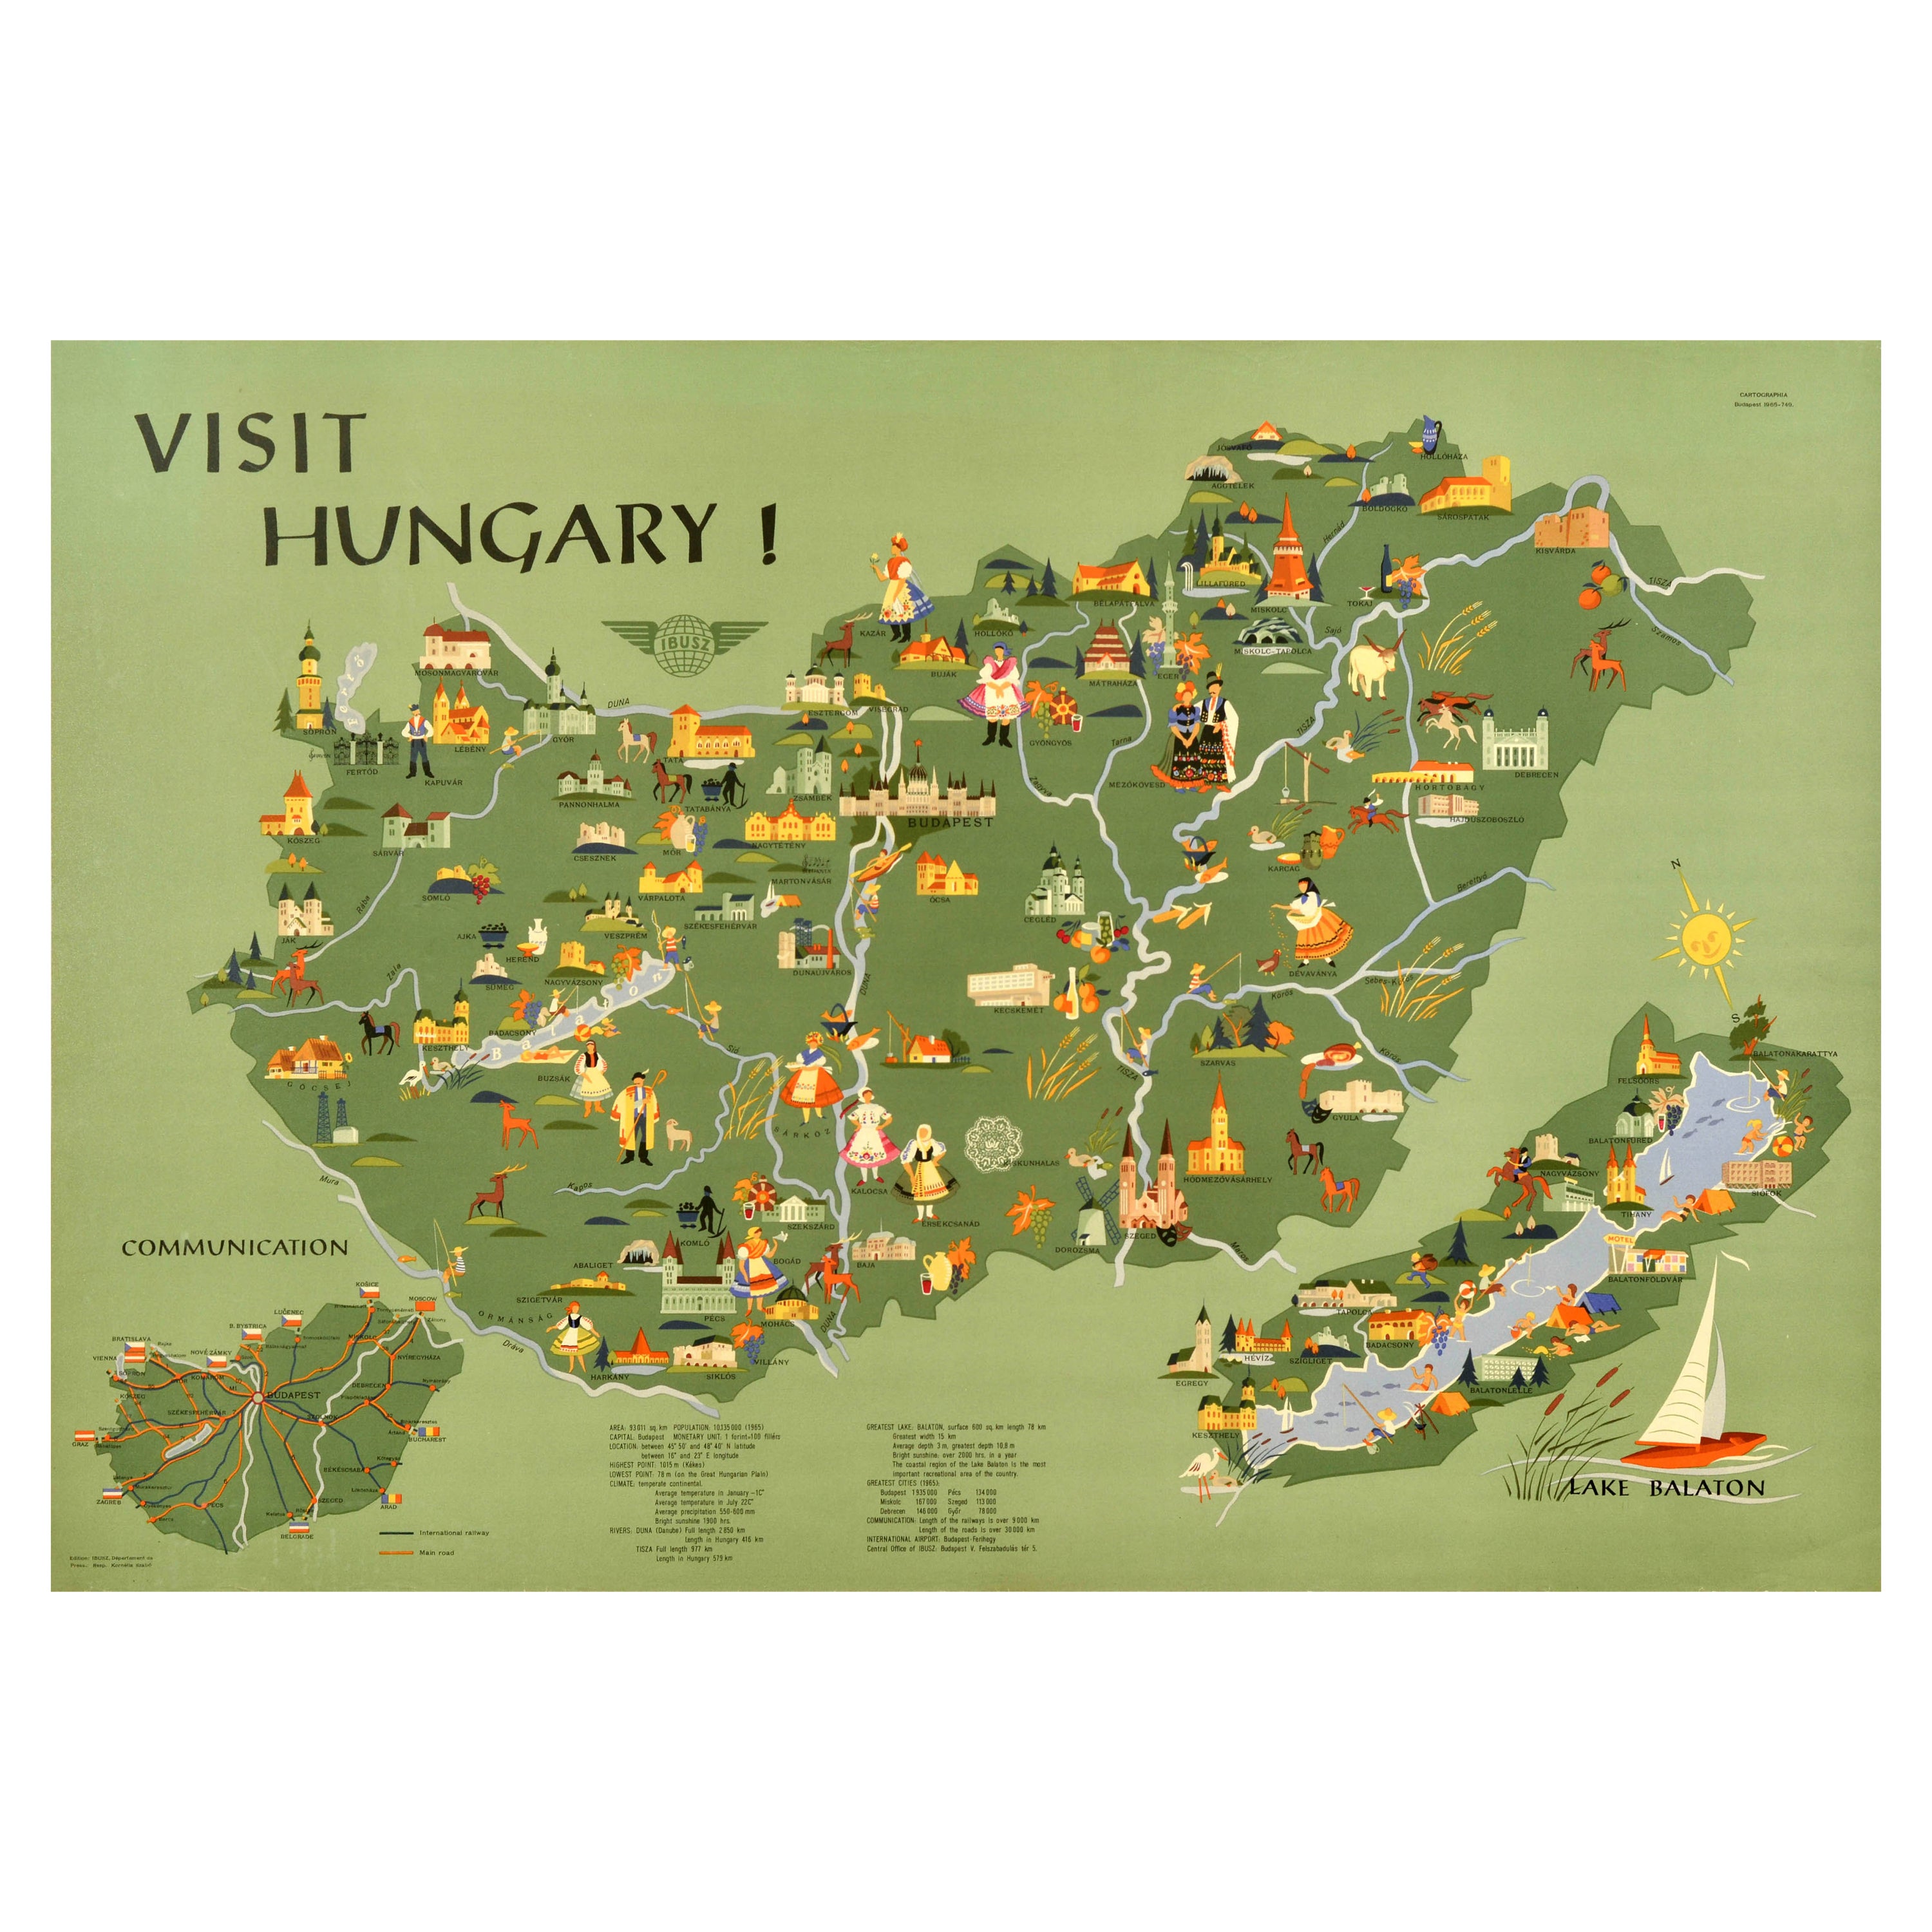 Original Vintage Travel Poster Visit Hungary Pictorial Map Budapest Lake Balaton